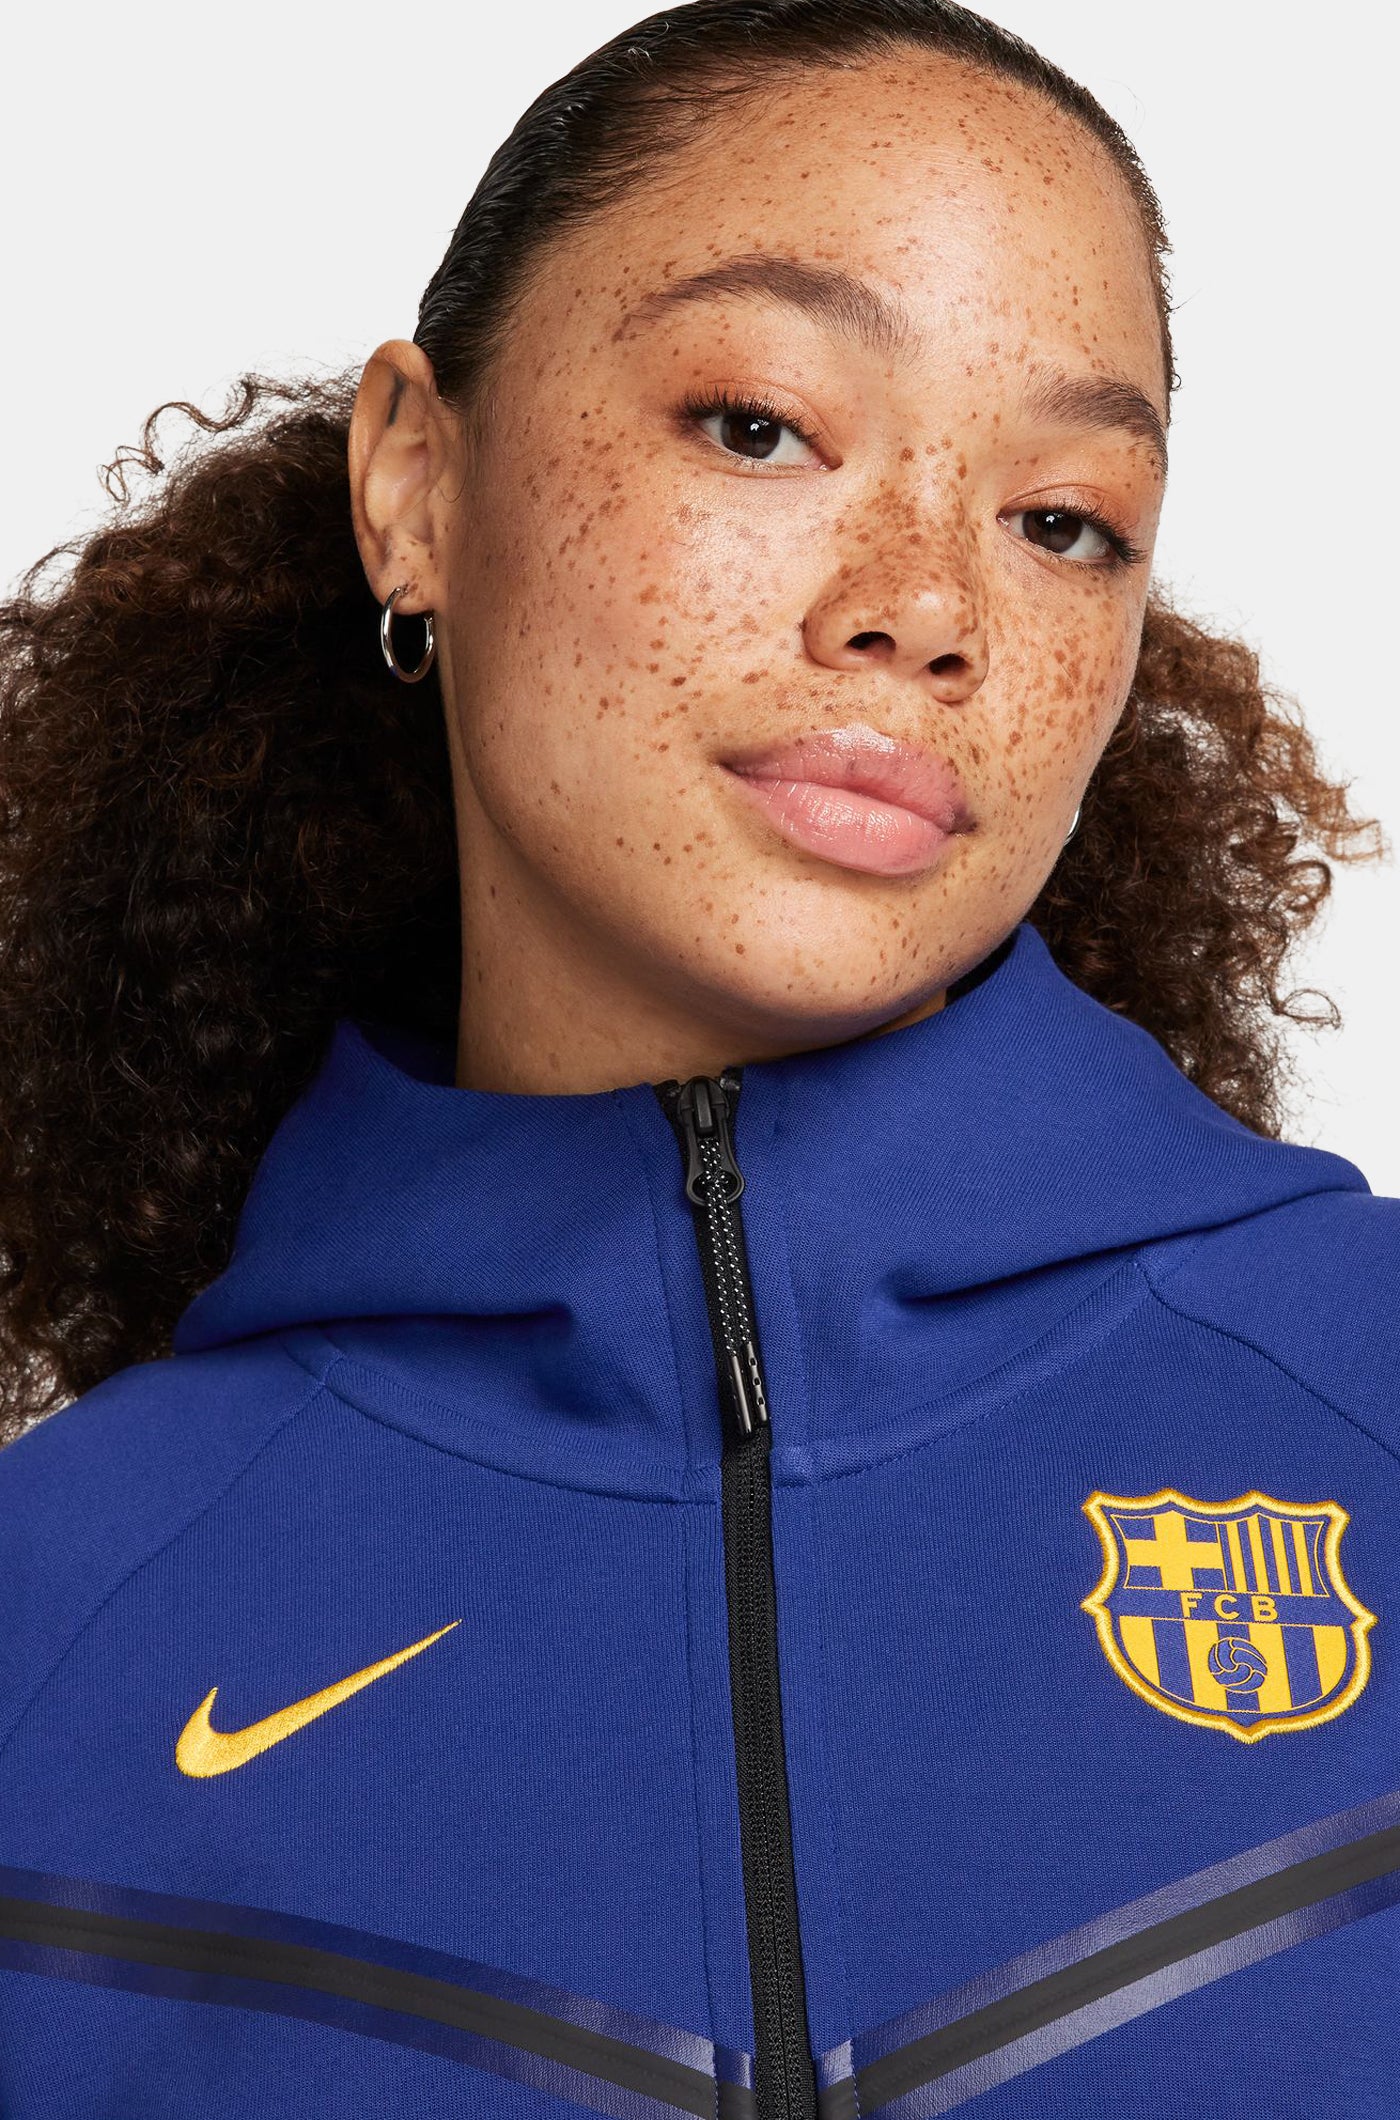 Tech jacket blue royal Barça Nike - Women's